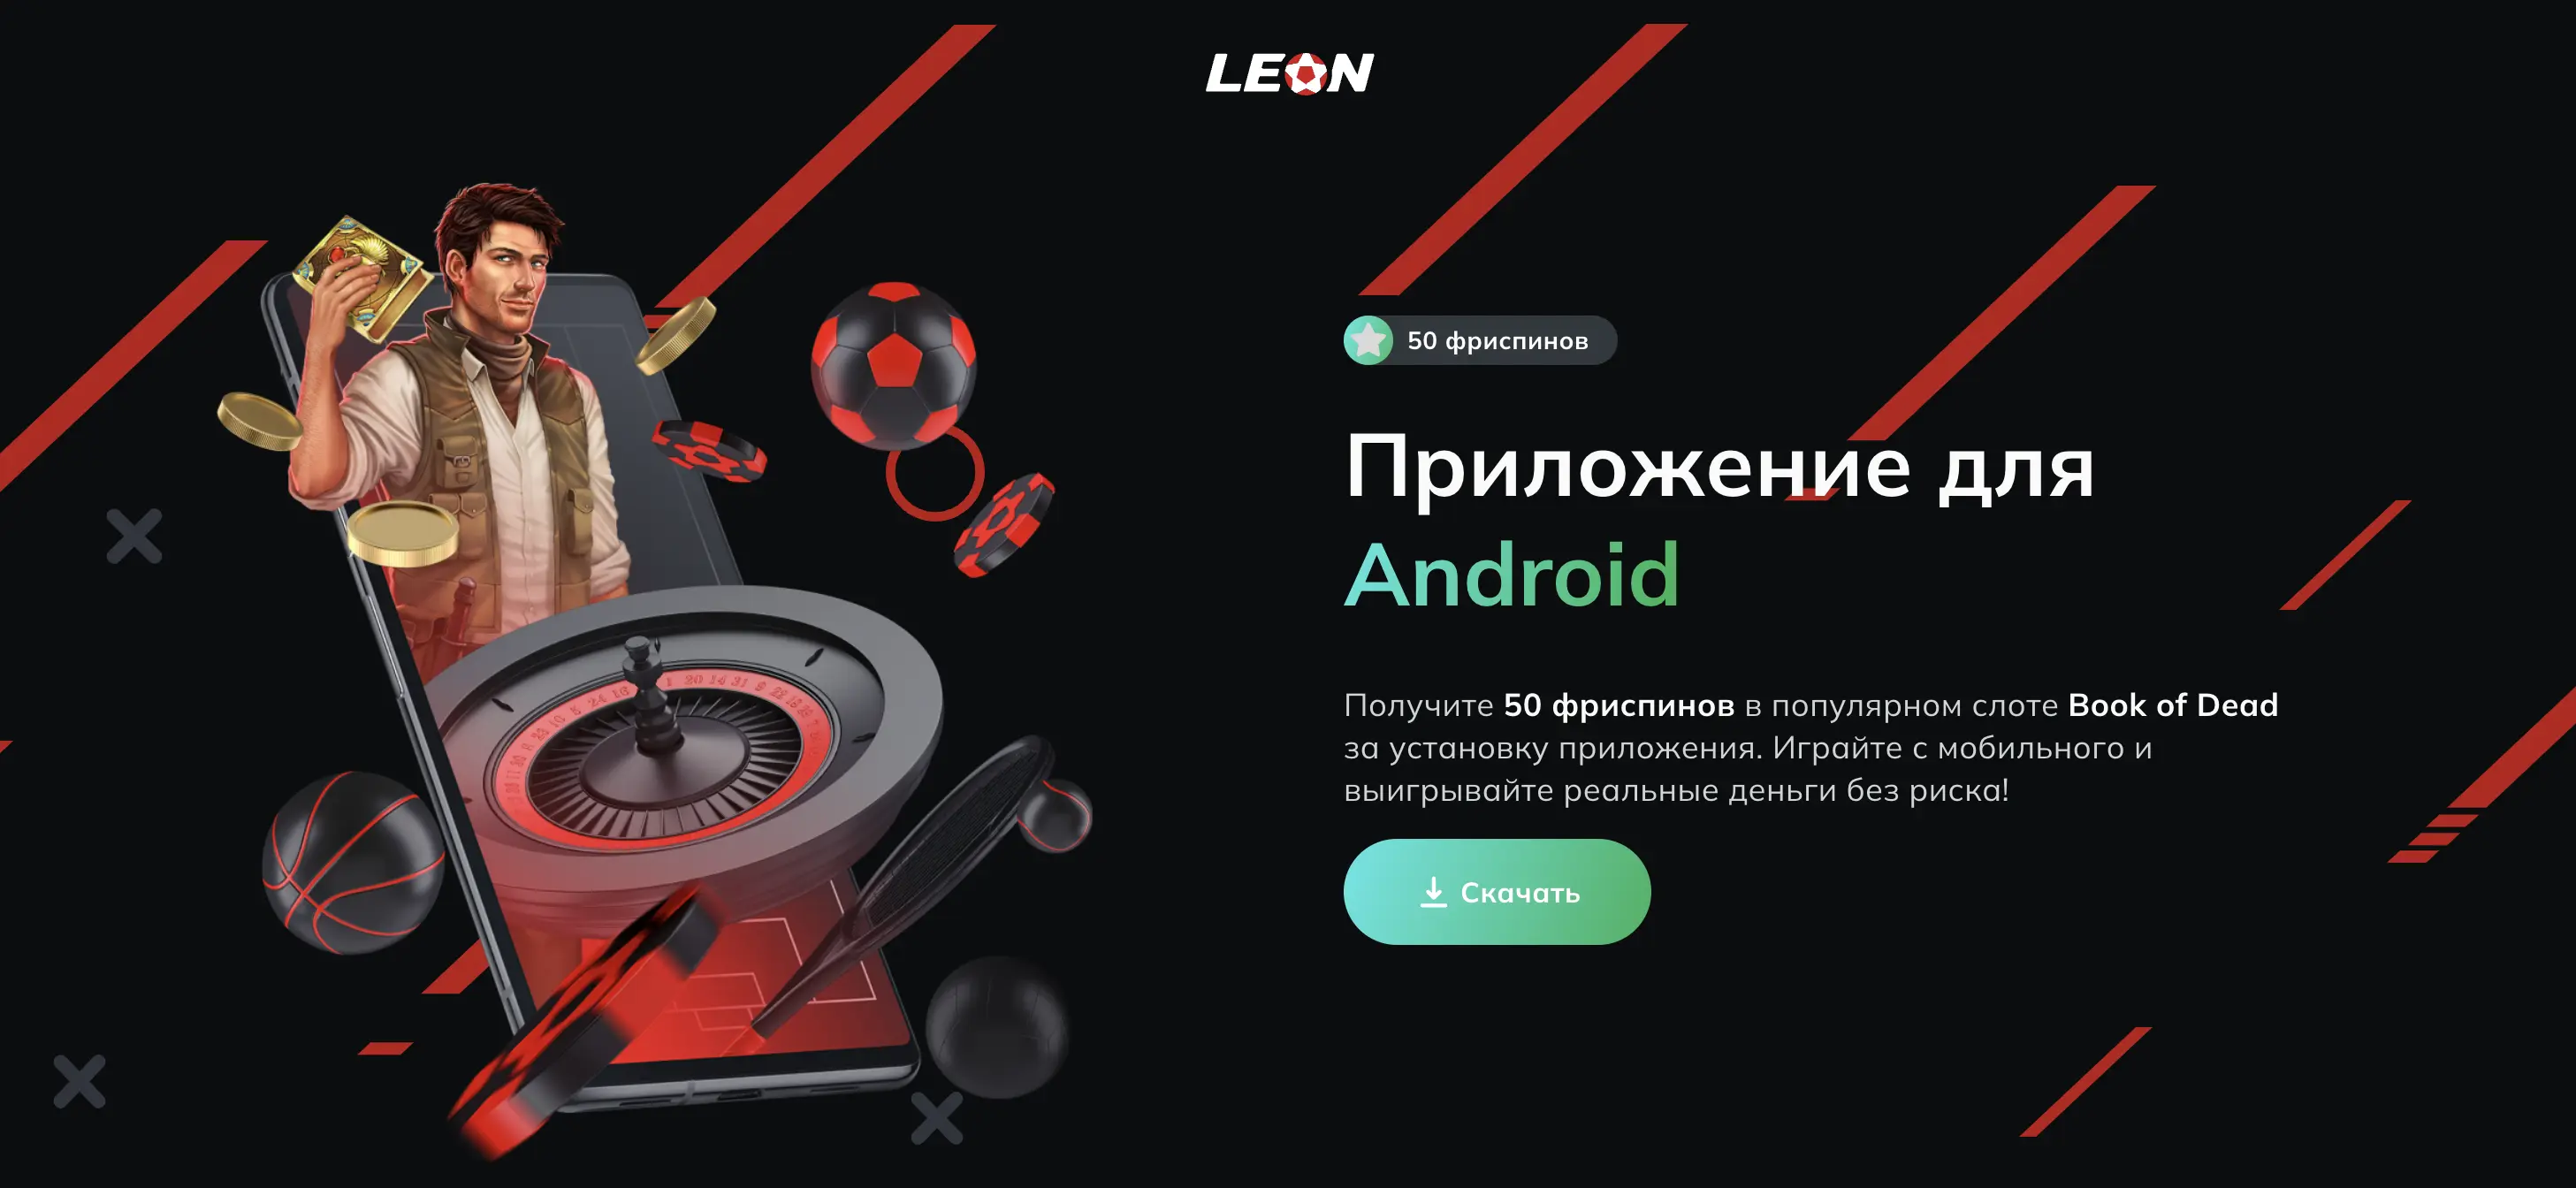 мобильное приложение бк леон